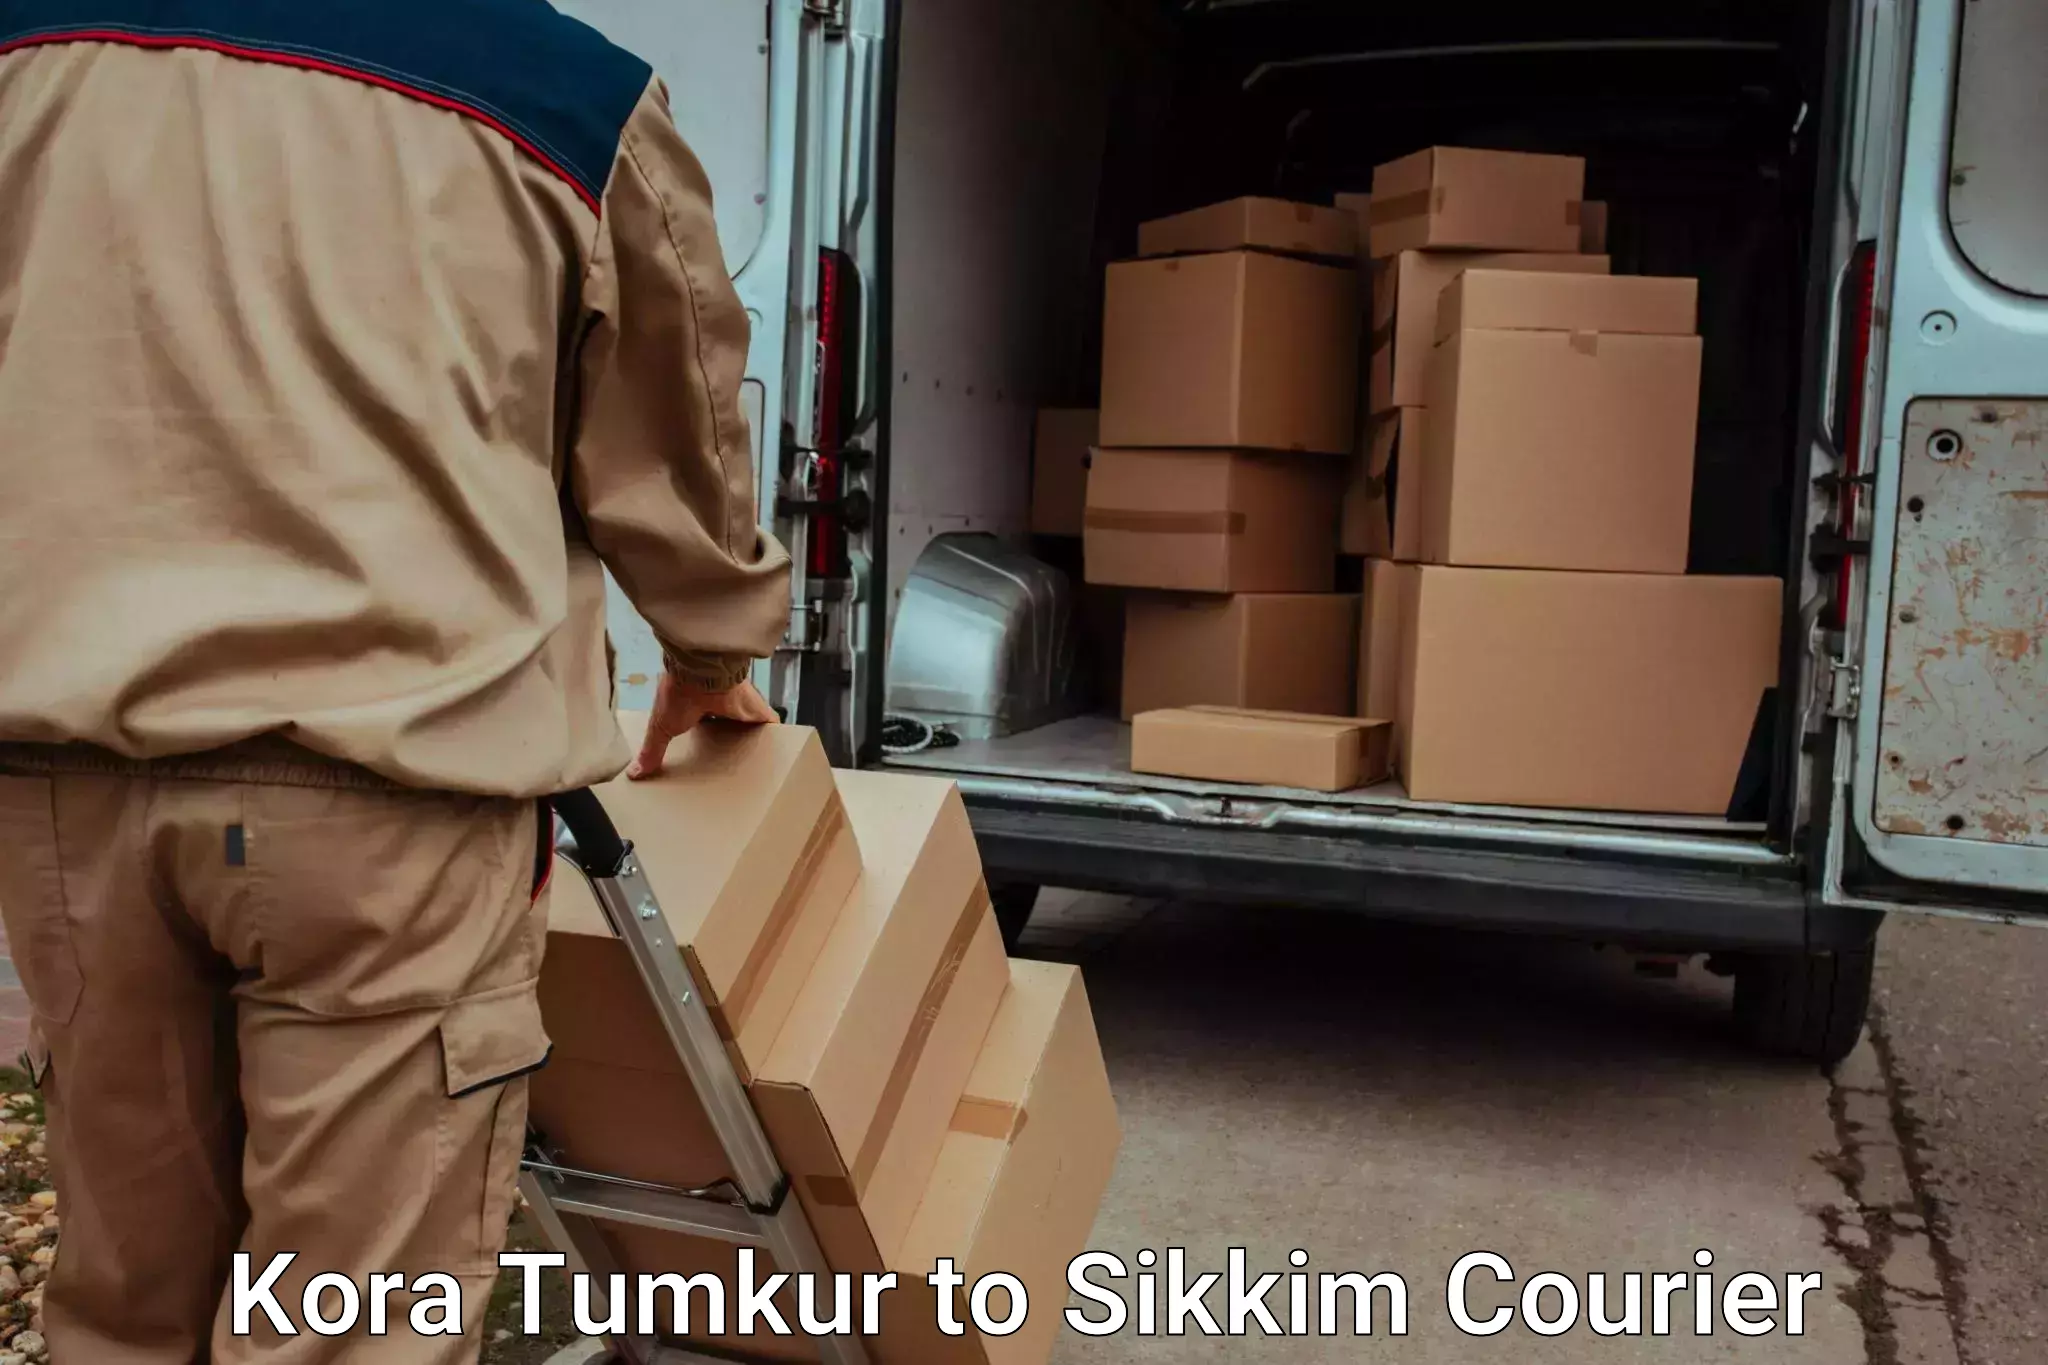 Baggage shipping service Kora Tumkur to Sikkim